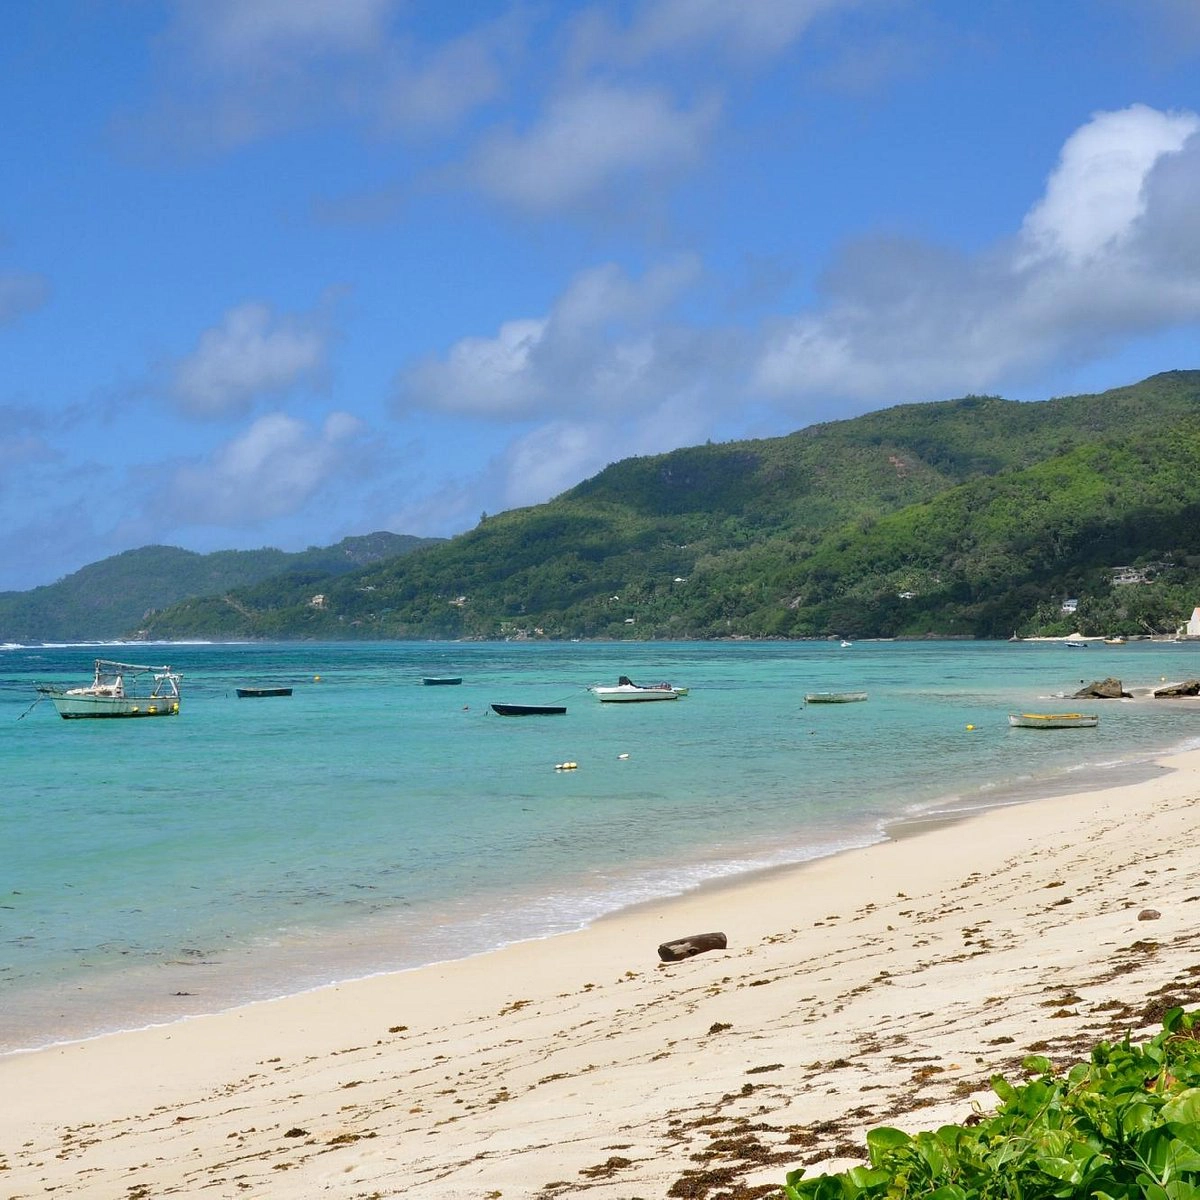  Anse Royale  strand - Mahé